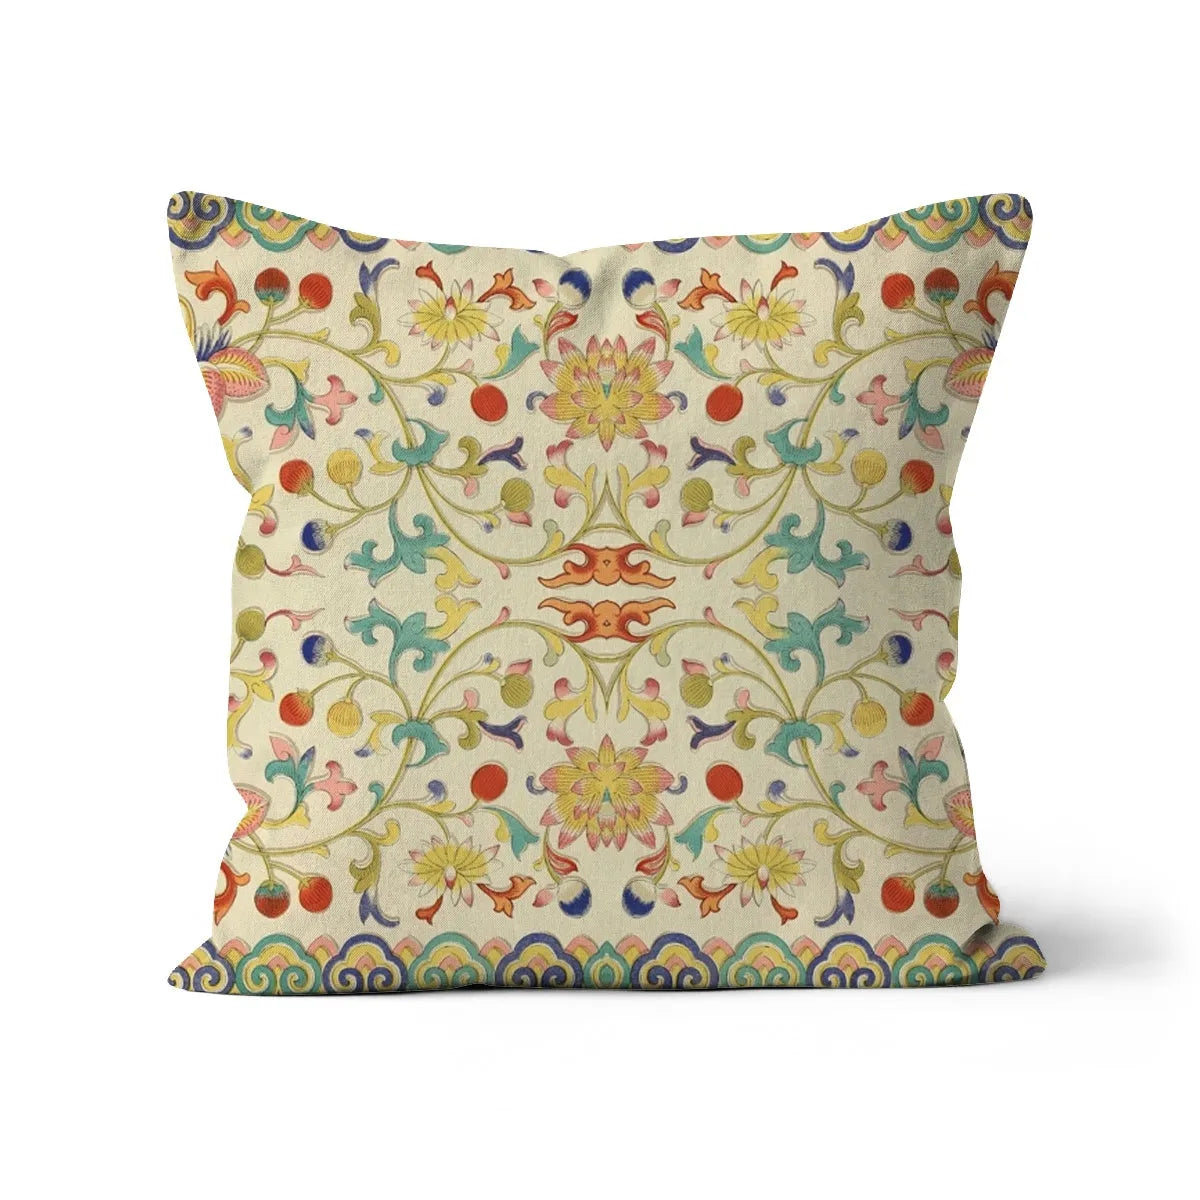 Over The Rainbow Cushion - Decorative Throw Pillow - Linen / 18’x18’ - Throw Pillows - Aesthetic Art